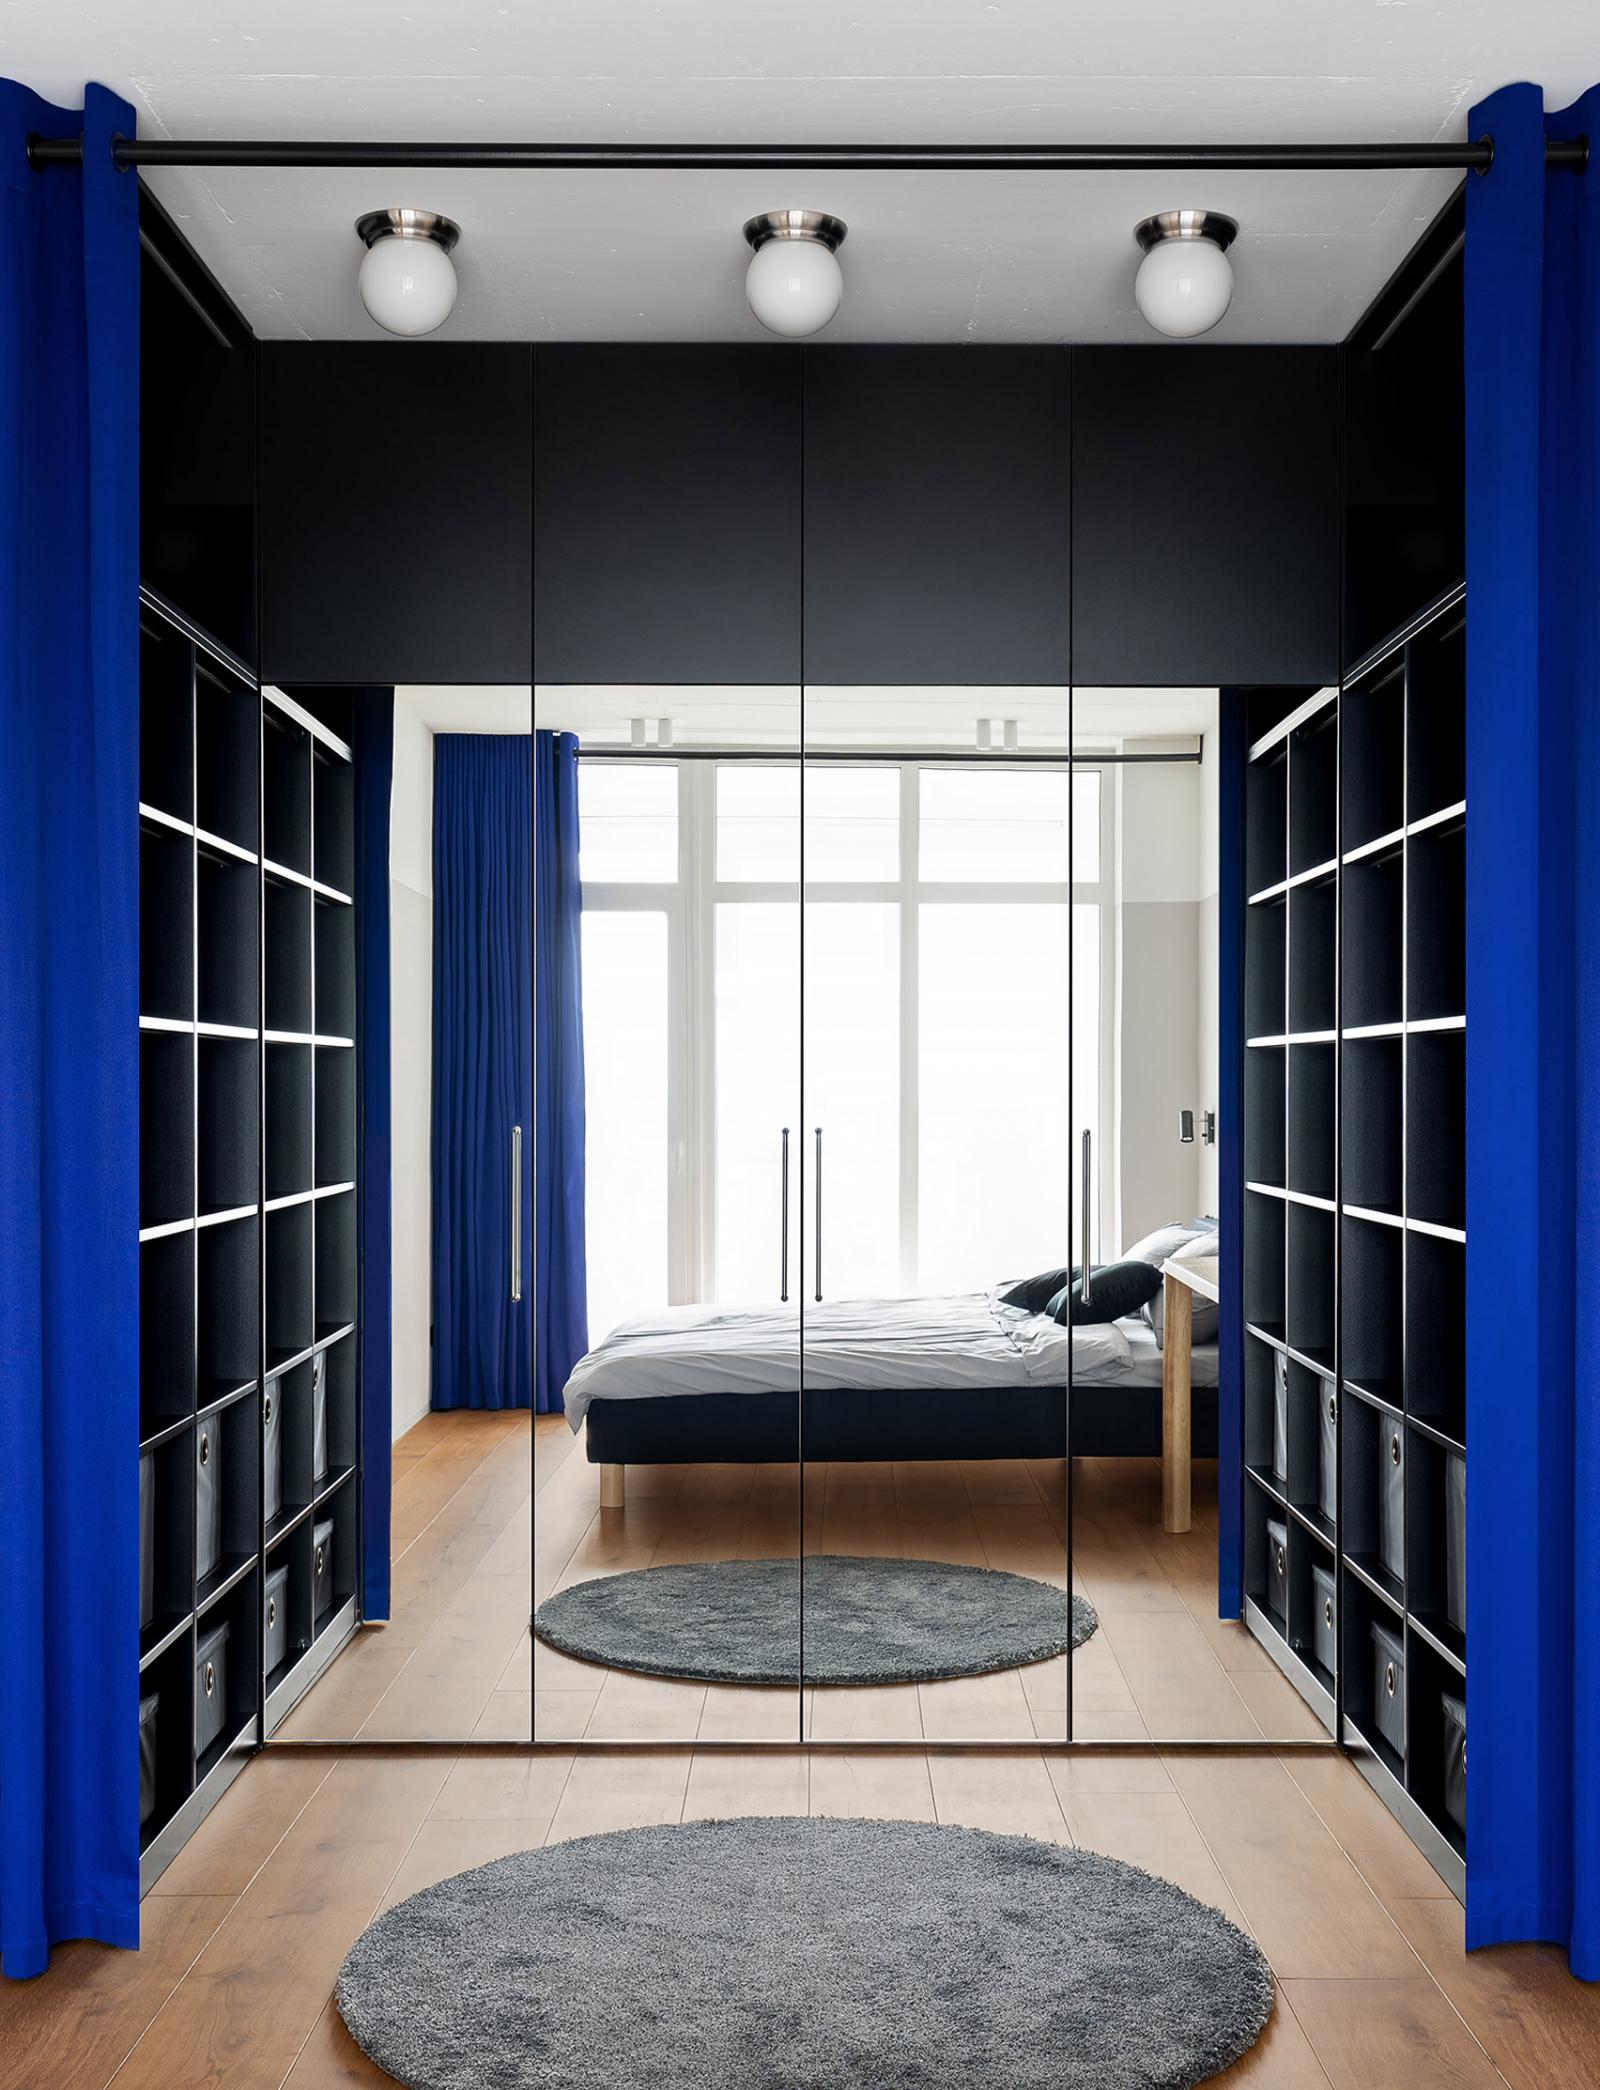 Hình ảnh cận cảnh phòng thay đồ tích hợp trong phòng ngủ với kệ mở cao kịch trần, phân tách bởi rèm cửa màu xanh coban